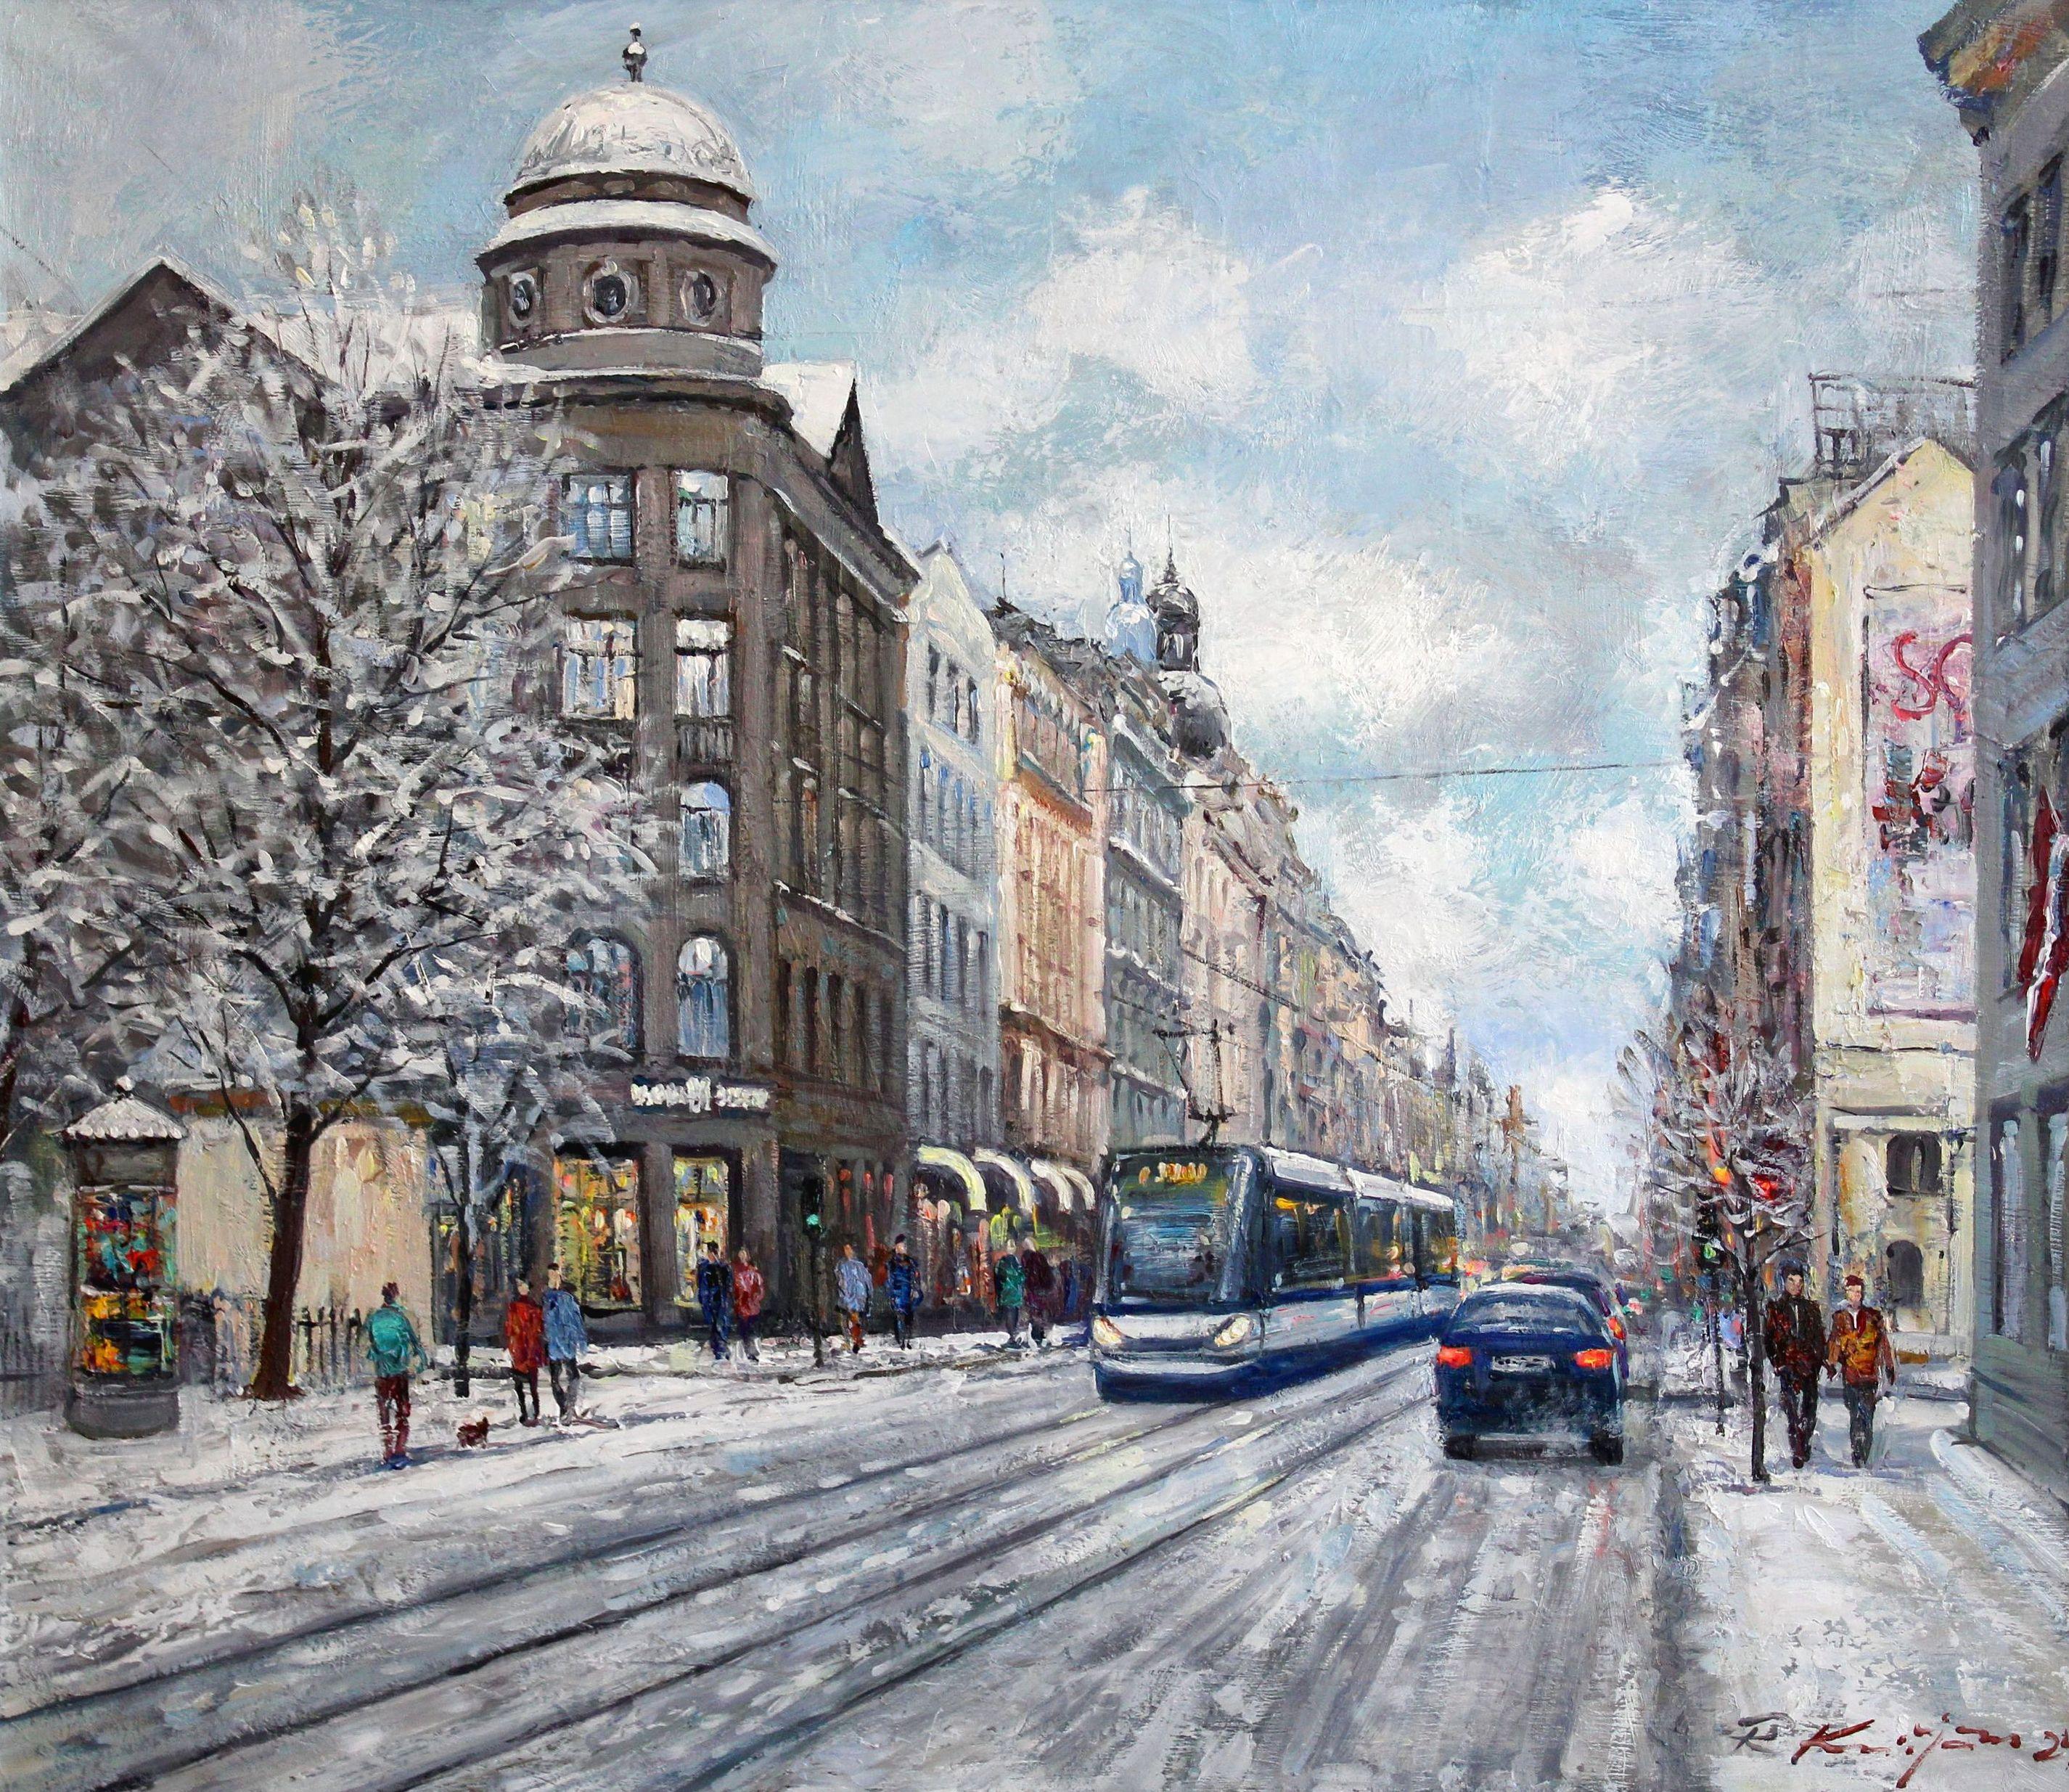 Rolands Krisjans Landscape Painting - Winter in the city. Oil on canvas, 73.5x85 cm